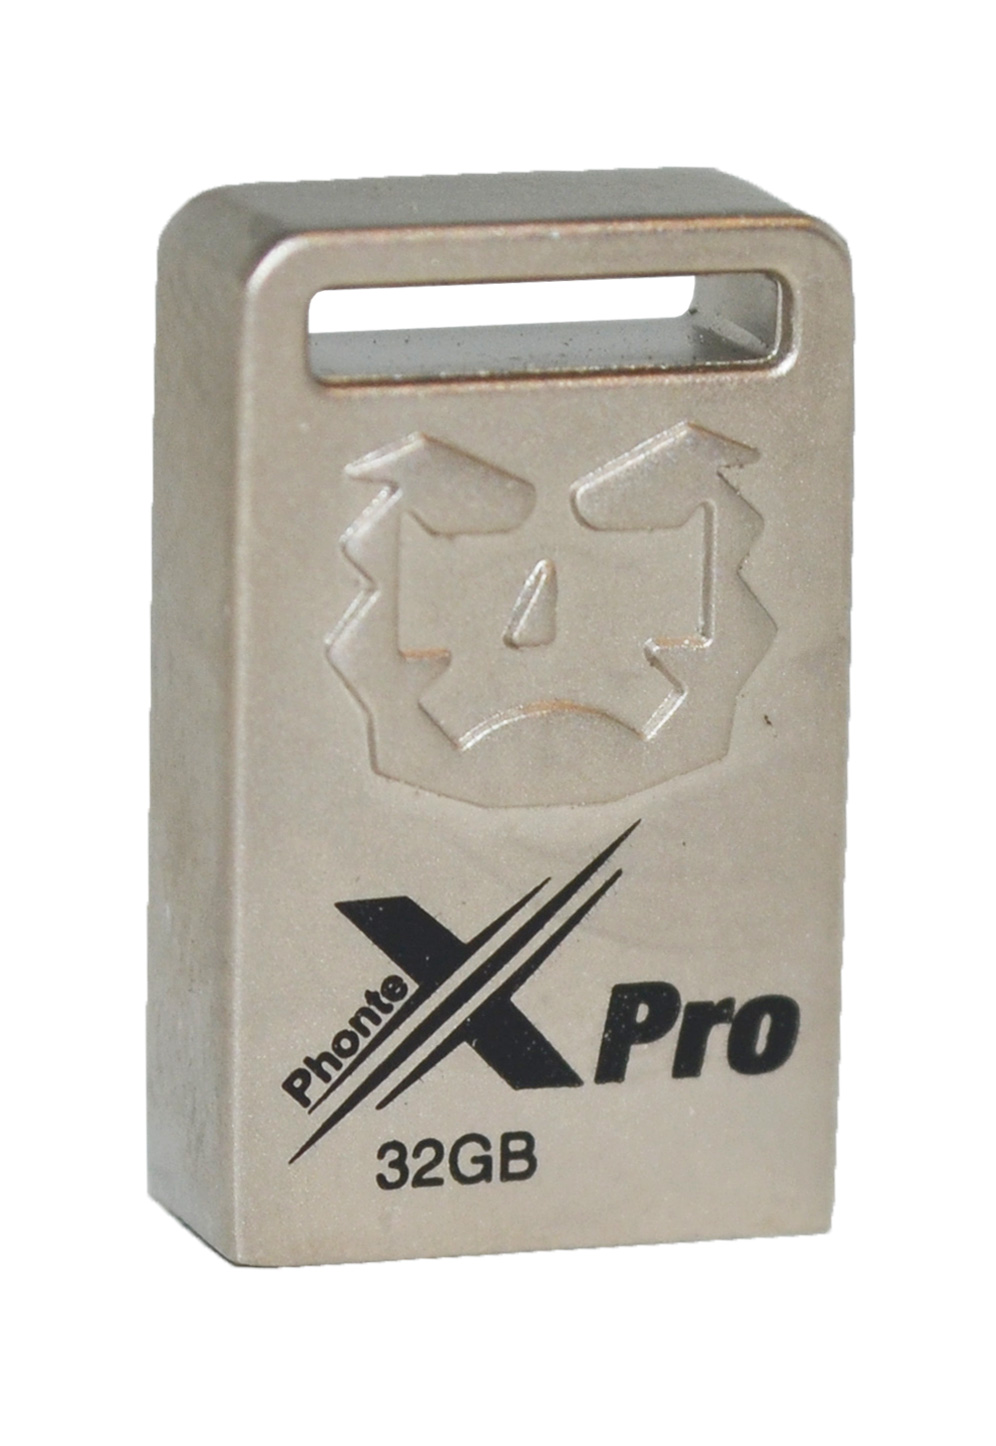 خريد فلش PhonteX Pro مدل 32GB X3